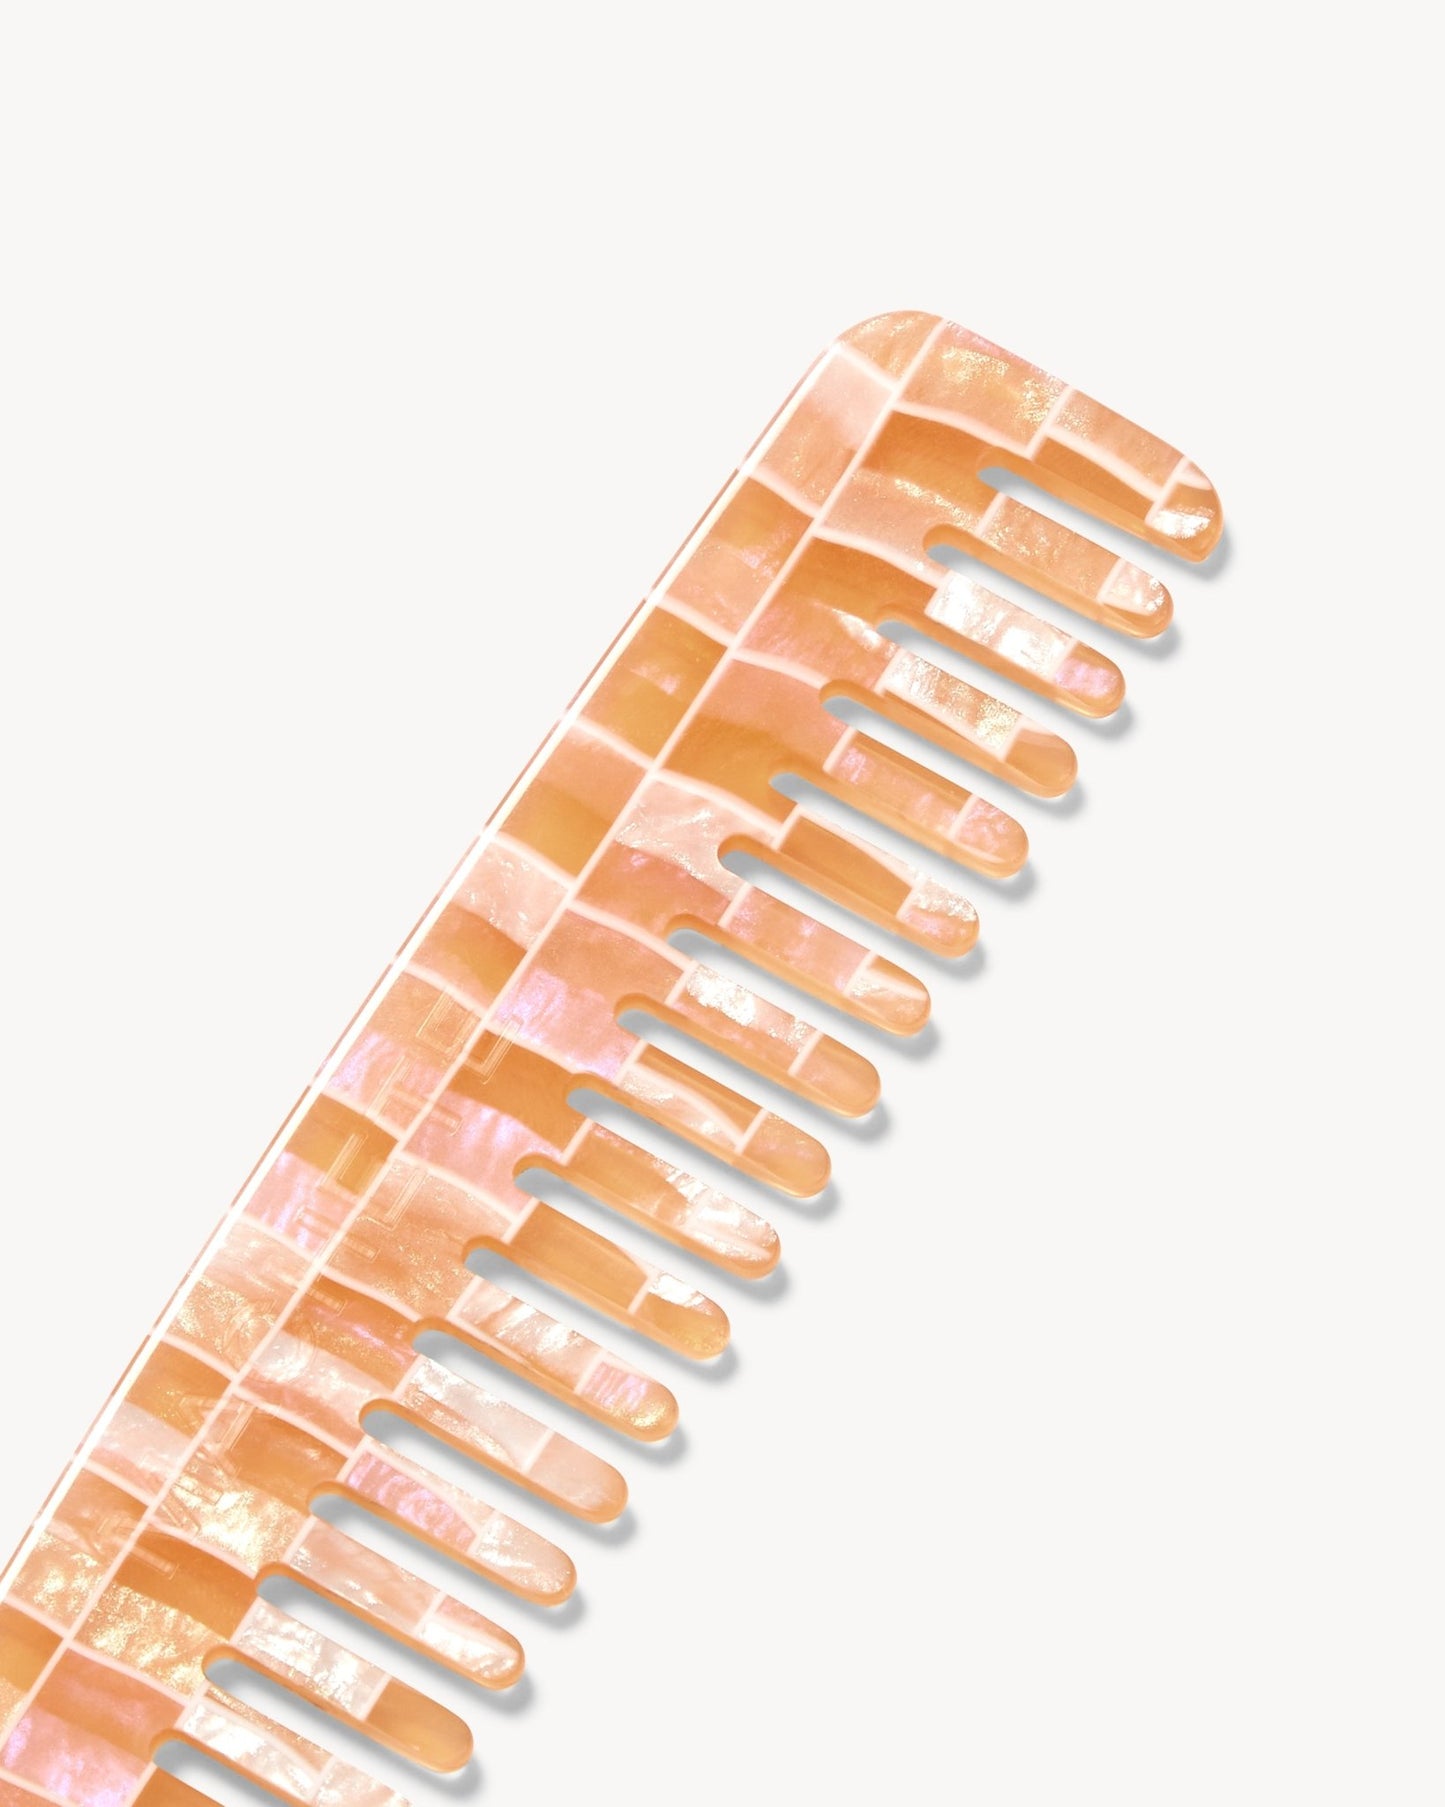 No. 3 Comb in Apricot Shell Checker - MACHETE